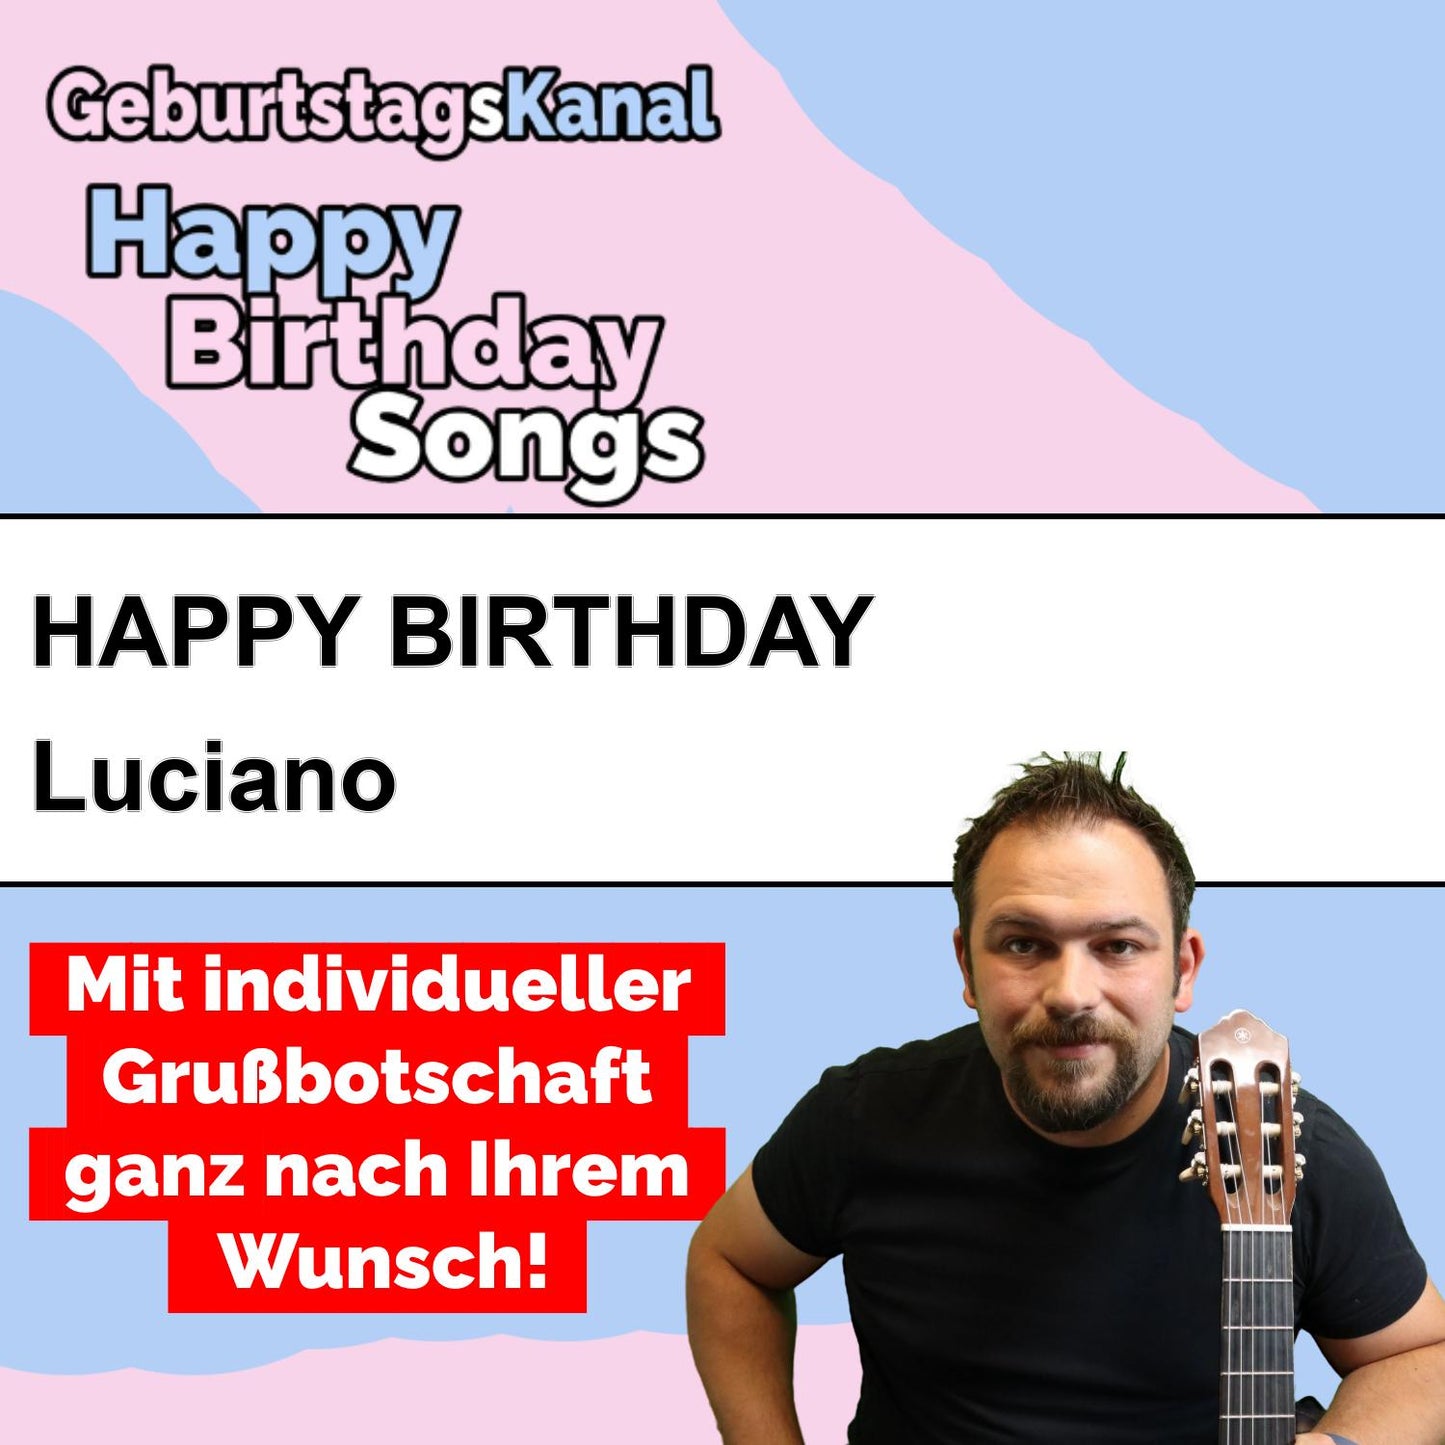 Produktbild Happy Birthday to you Luciano mit Wunschgrußbotschaft